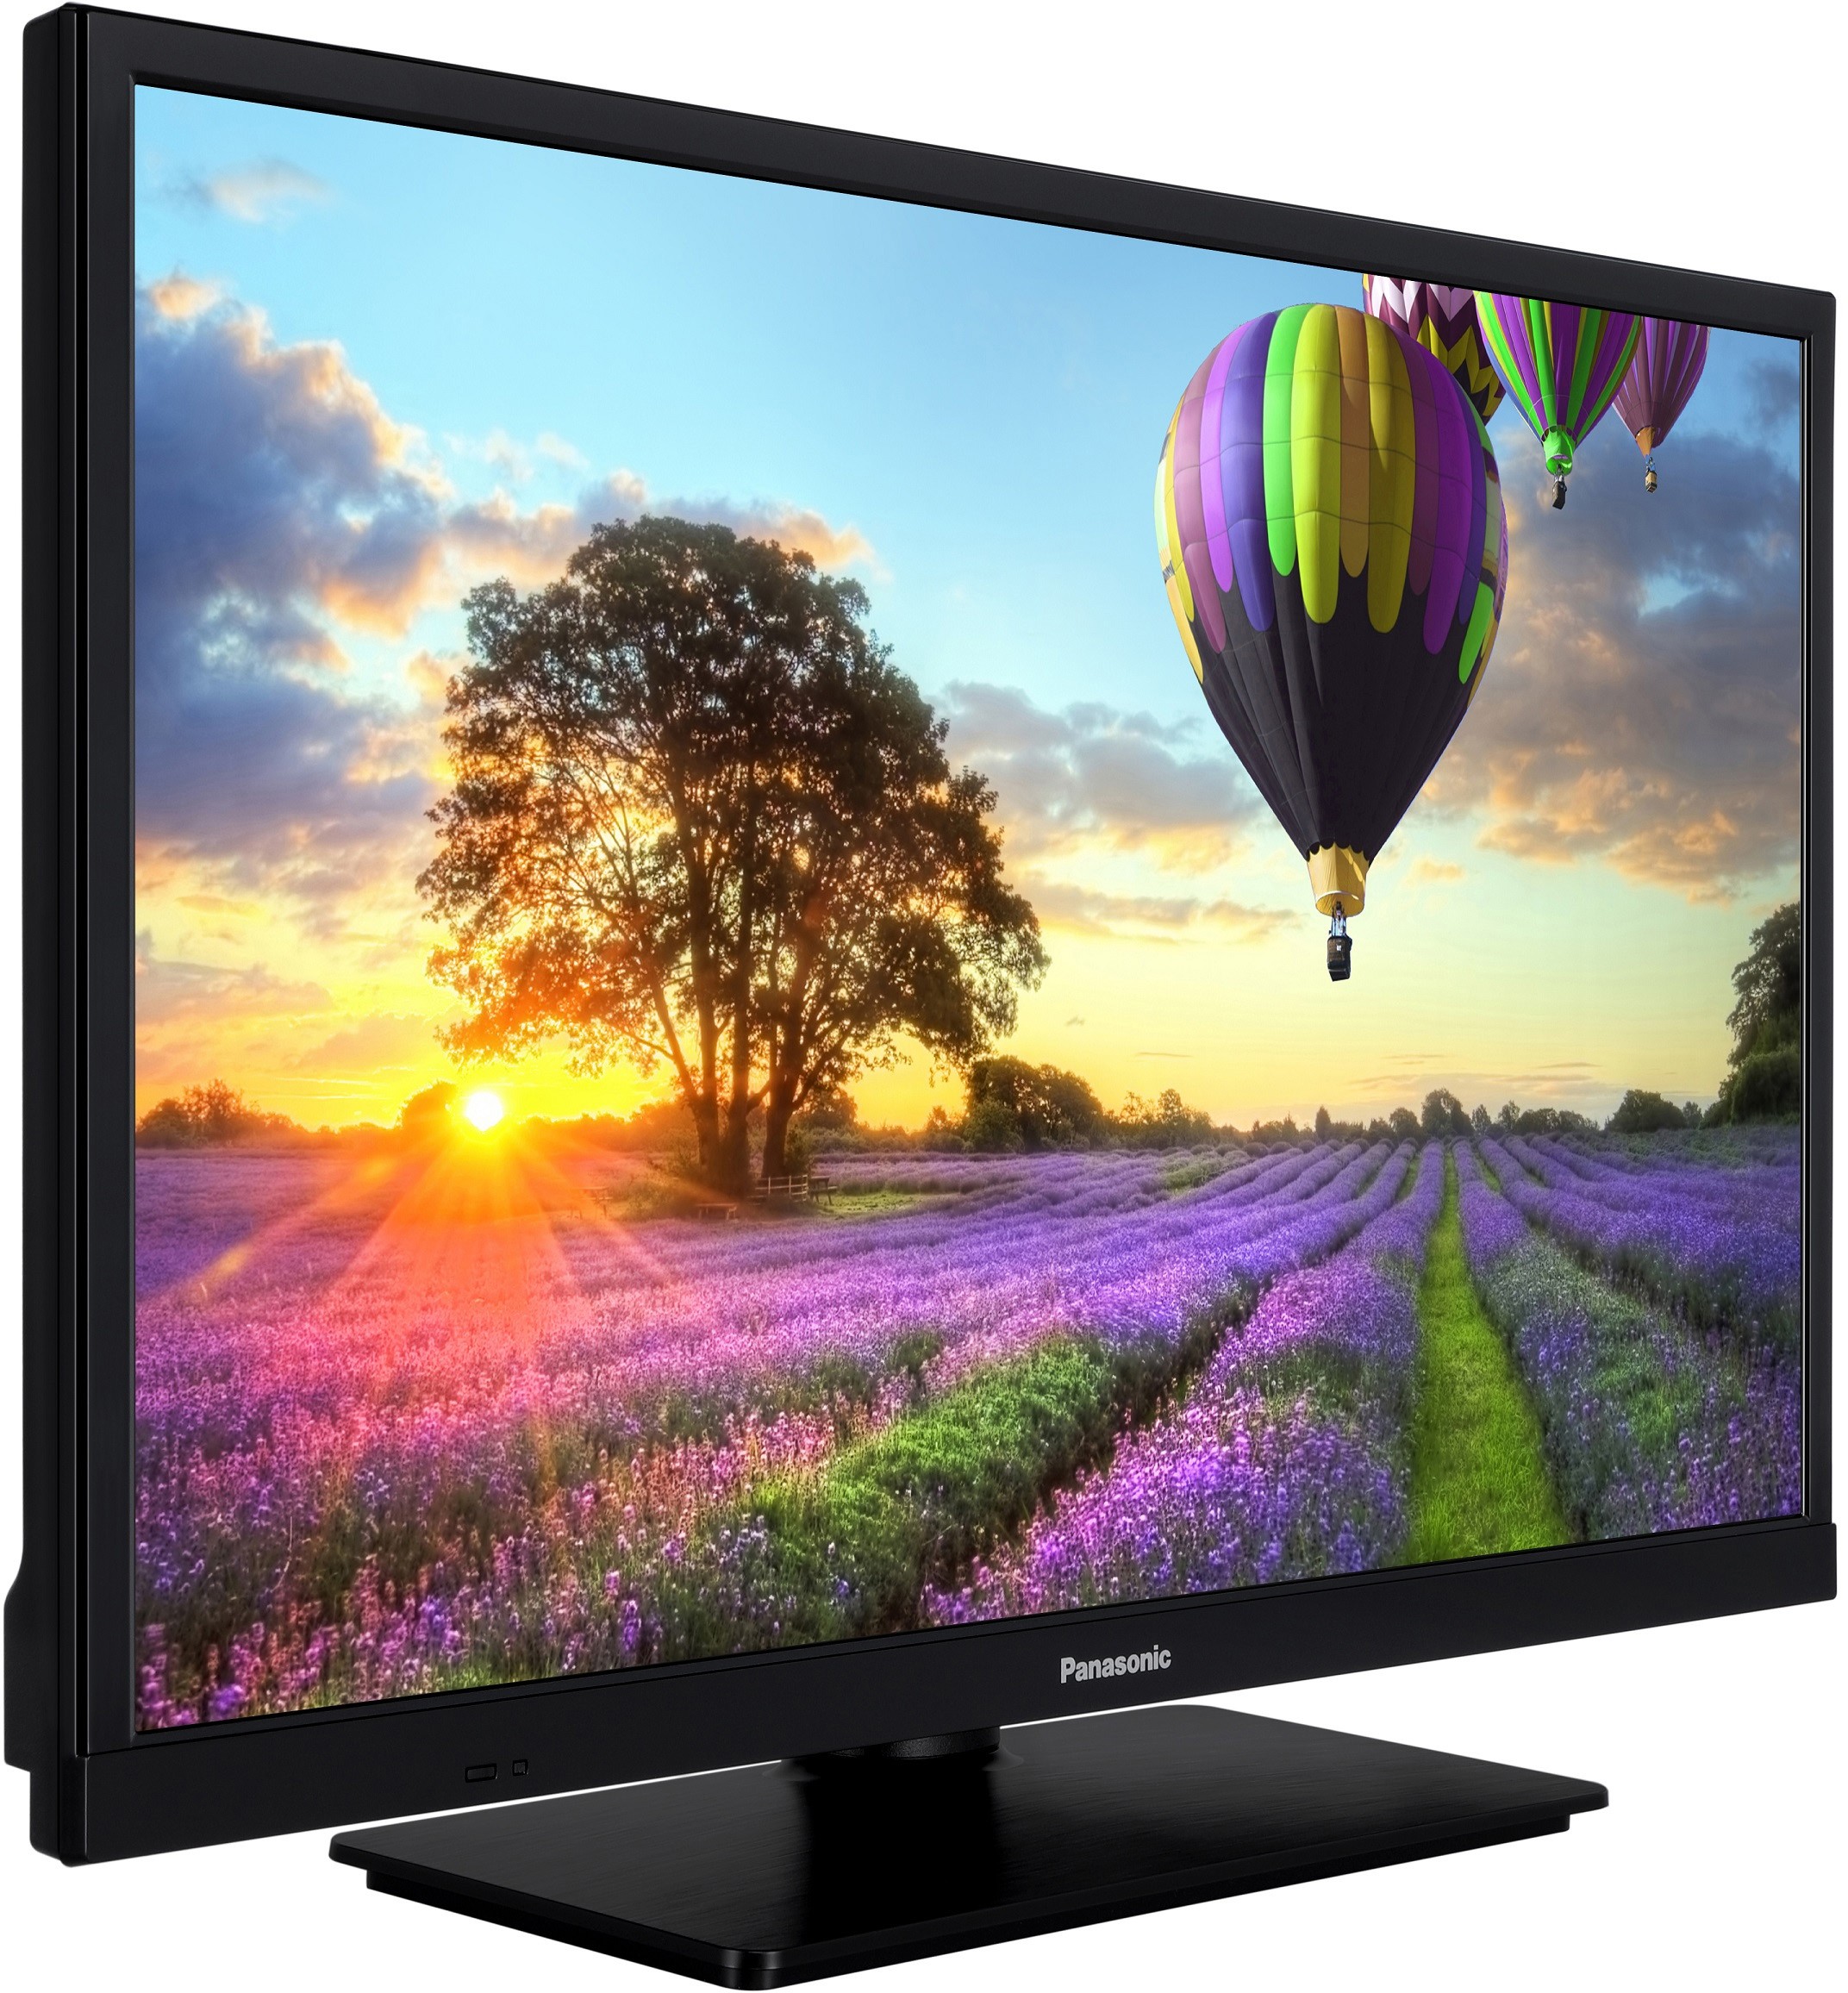 PANASONIC TV LED 60 cm  - TX-24M330E